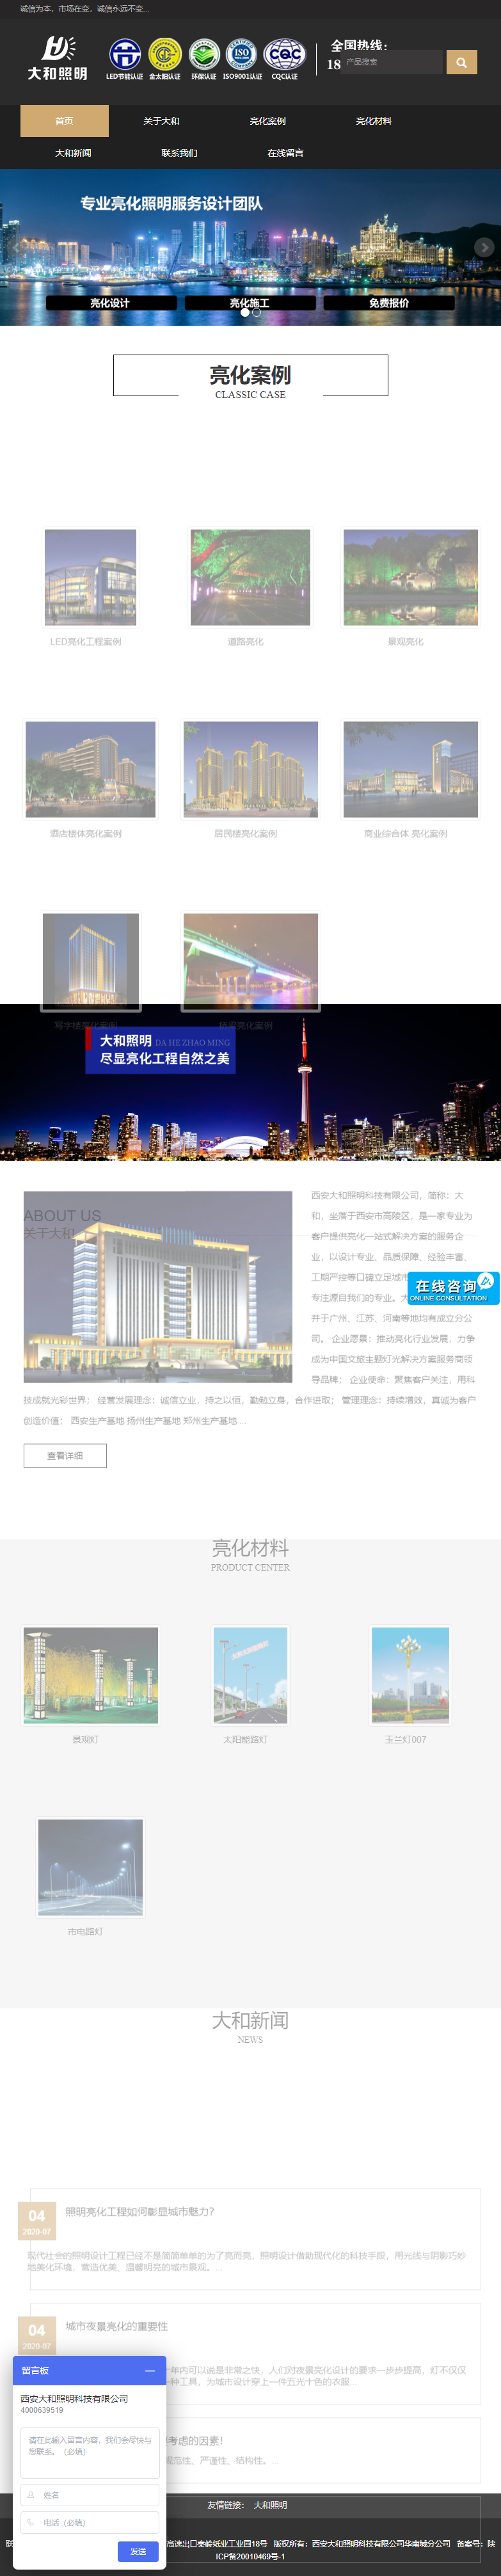 西安大和照明科技有限公司华南城分公司网站案例